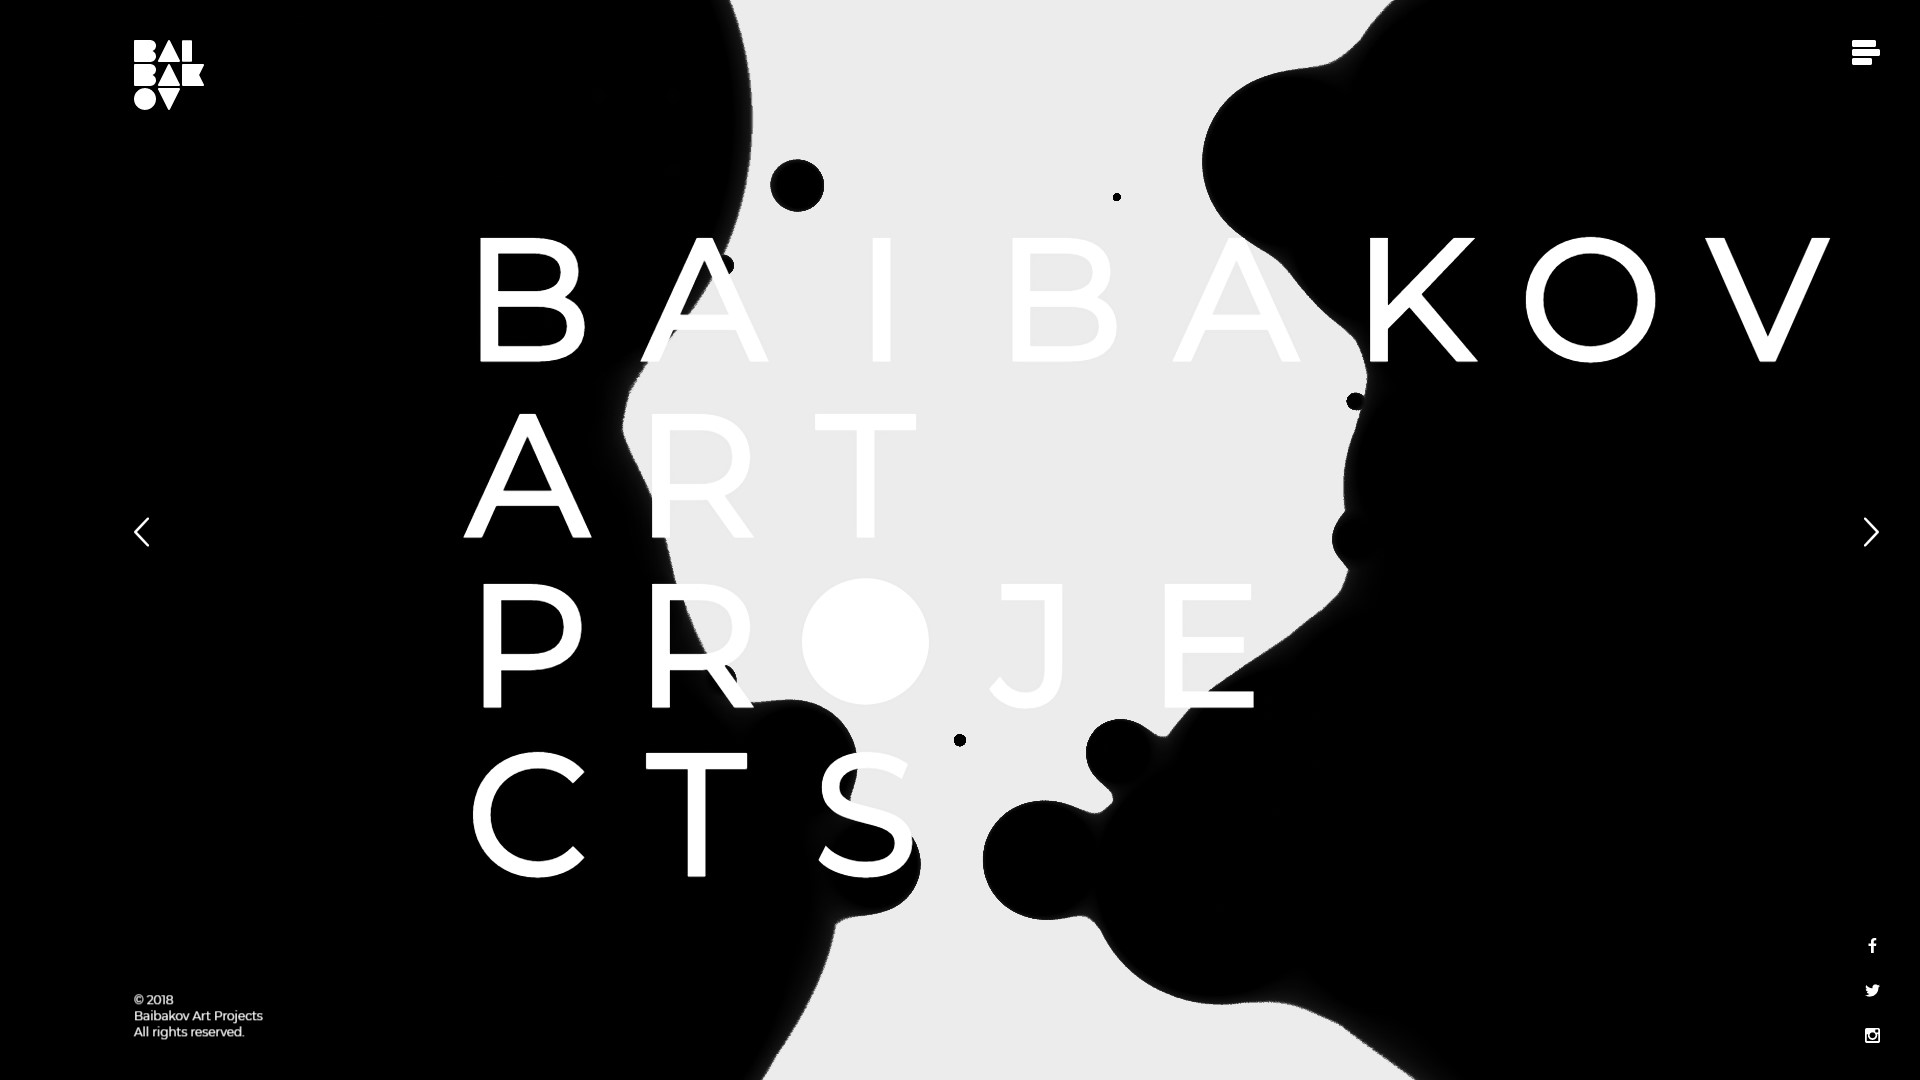 Baibakov art projects art & illustration animation